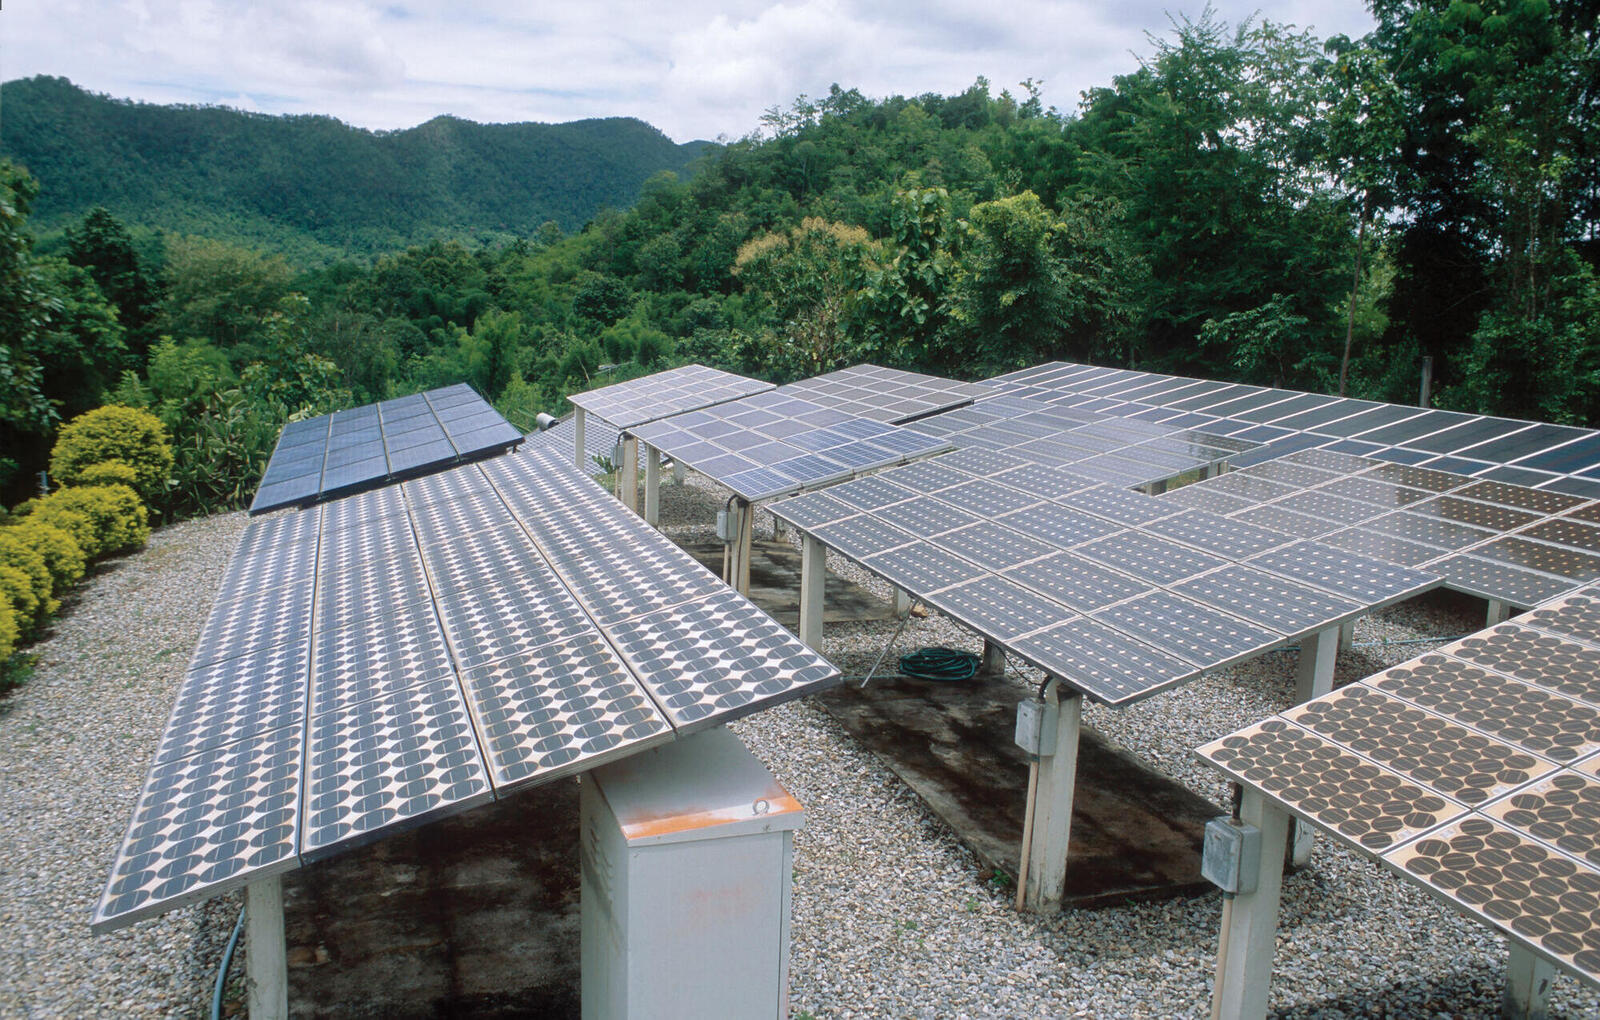 Solar panels in mountain landscape